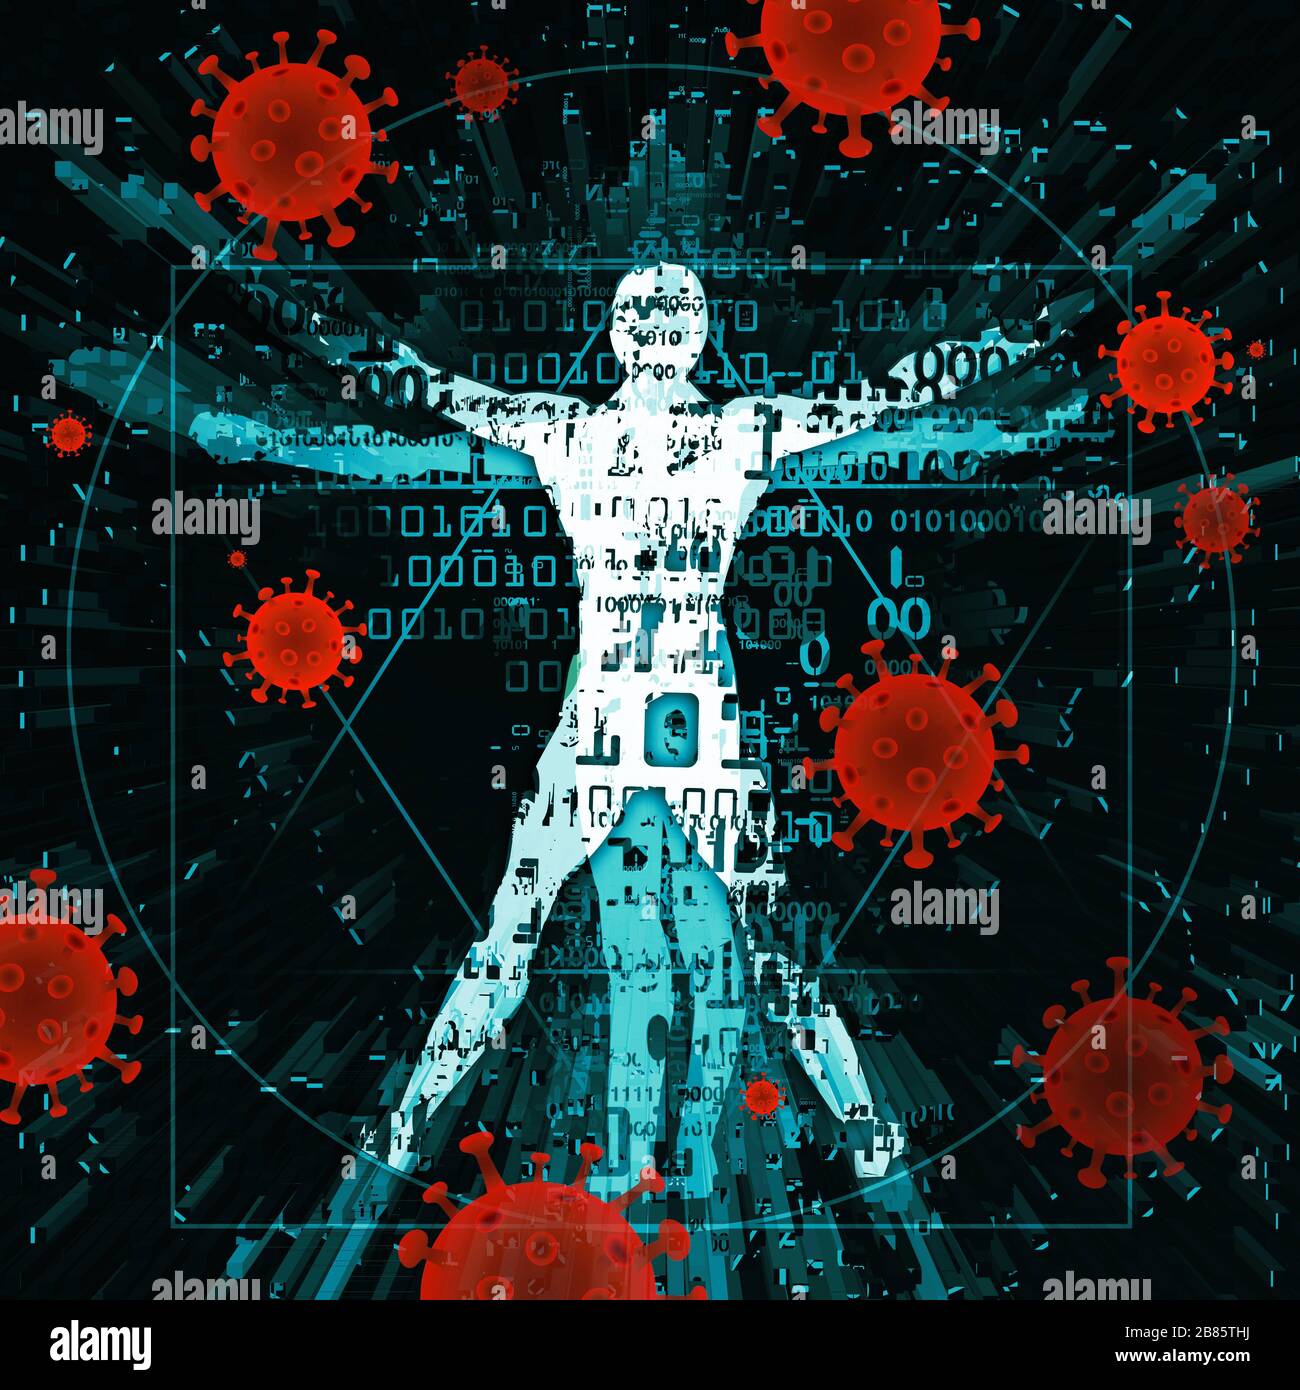 Uomo vitruviano di età moderna, vittima della pandemia di coronavirus. Illustrazione dell'uomo vitruviano con numeri digitali e simboli di coronavirus. Foto Stock